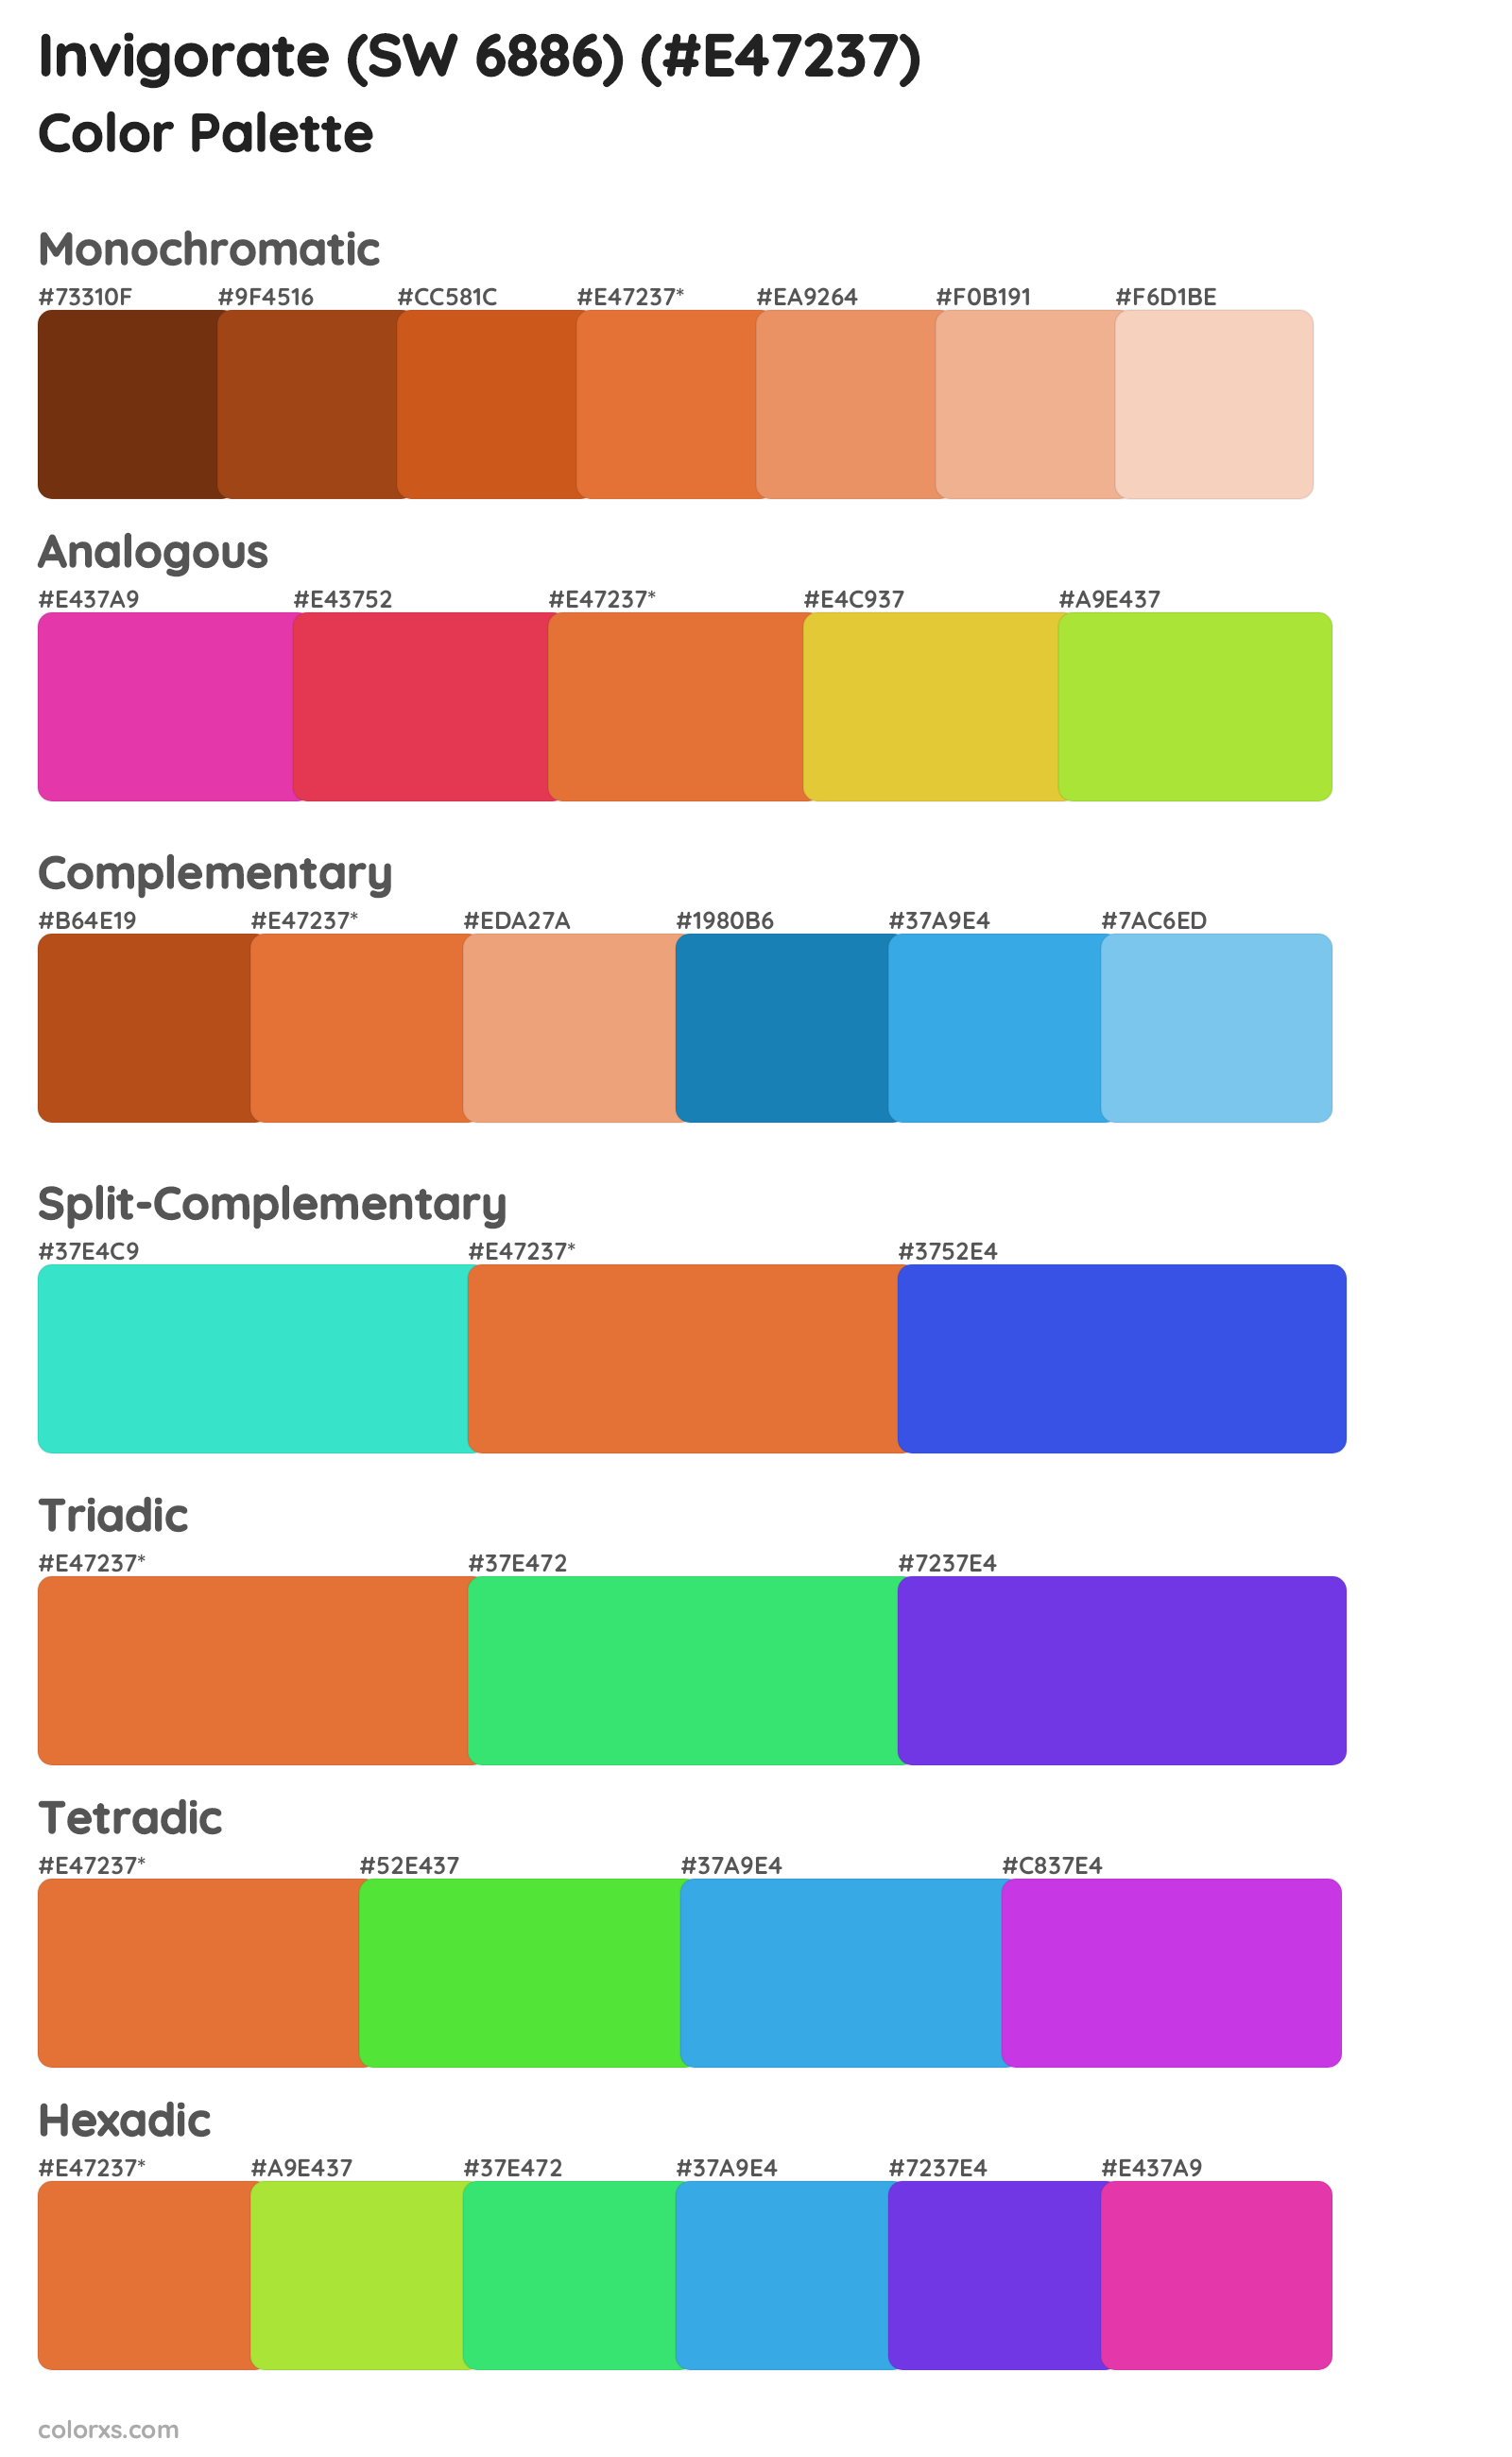 Invigorate (SW 6886) Color Scheme Palettes